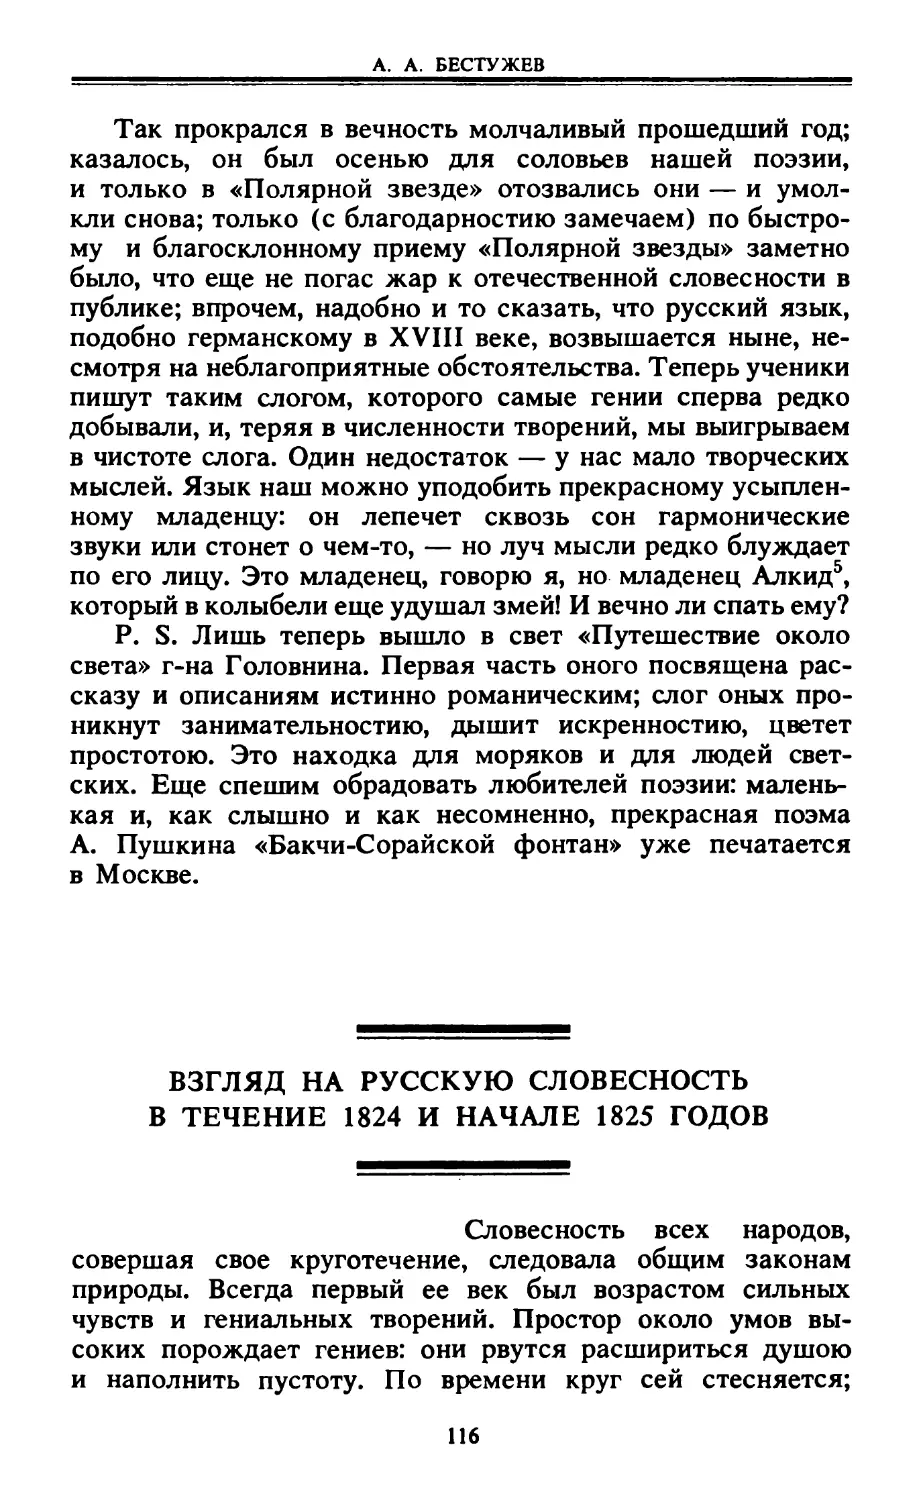 Взгляд на русскую словесность в течение 1824 и начале 1825 годов